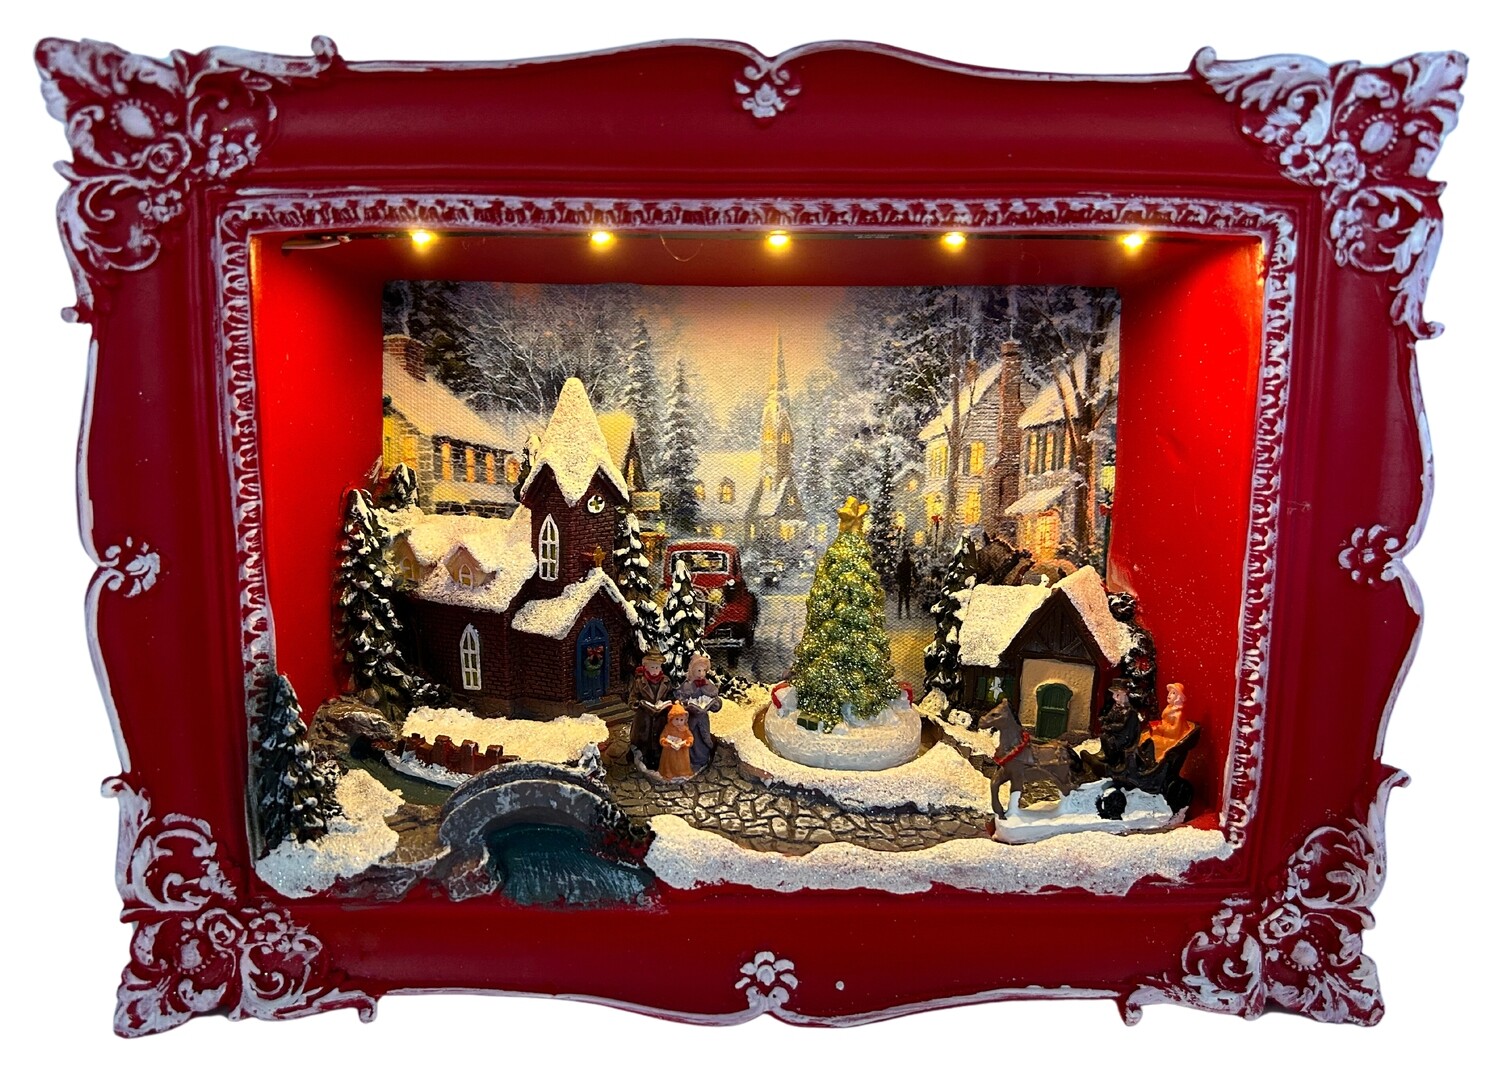 Verleihen Sie Ihrem Zuhause eine weihnachtliche Atmosphäre mit dem abc HOME Wandbild Winterszene & Spieluhr (21 cm H)!
Idyllisches Winterdesign: Dieses Wandbild überzeugt mit seinem stimmungsvollen Winterdesign und zaubert eine märchenhafte Weihnachtsatmosphäre in Ihr Zuhause.
Integrierte Spieluhr: Die integrierte Spieluhr spielt beliebte Weihnachtsmelodien wie "Jingle Bells", "We wish you a Merry Christmas" und "Silent Night" und sorgt für eine gemütliche Stimmung.
5 warmweiße LEDs: Die 5 warmweißen LEDs im Wandbild tauchen den Raum in ein sanftes Licht und unterstreichen die zauberhafte Atmosphäre.
Hochwertige Materialien: Das Wandbild ist aus hochwertigem Polyresin und Vliesstoff gefertigt und garantiert langlebige Qualität.
Praktische Details: Die Maße des Wandbilds betragen 8 cm T x 29 cm B x 21 cm H. Die Spieluhr ist batteriebetrieben (Batterien nicht im Lieferumfang enthalten).
Spezifikationen:
Marke: abc HOME
Maße: 8 cm T x 29 cm B x 21 cm H
Material: Polyresin, Vliesstoff
Funktionen: Integrierte Spieluhr (Melodien: Jingle Bells, We wish you a Merry Christmas, Silent Night usw.), 5 leuchtende LEDs (warm-weiß), batteriebetrieben
Keywords: Wandbild, Winterszene, Spieluhr, Weihnachten, LEDs, Melodie, warmweiß, Polyresin, Vliesstoff, Wohnzimmer, Schlafzimmer, Kinderzimmer, Dekoration, Geschenkidee